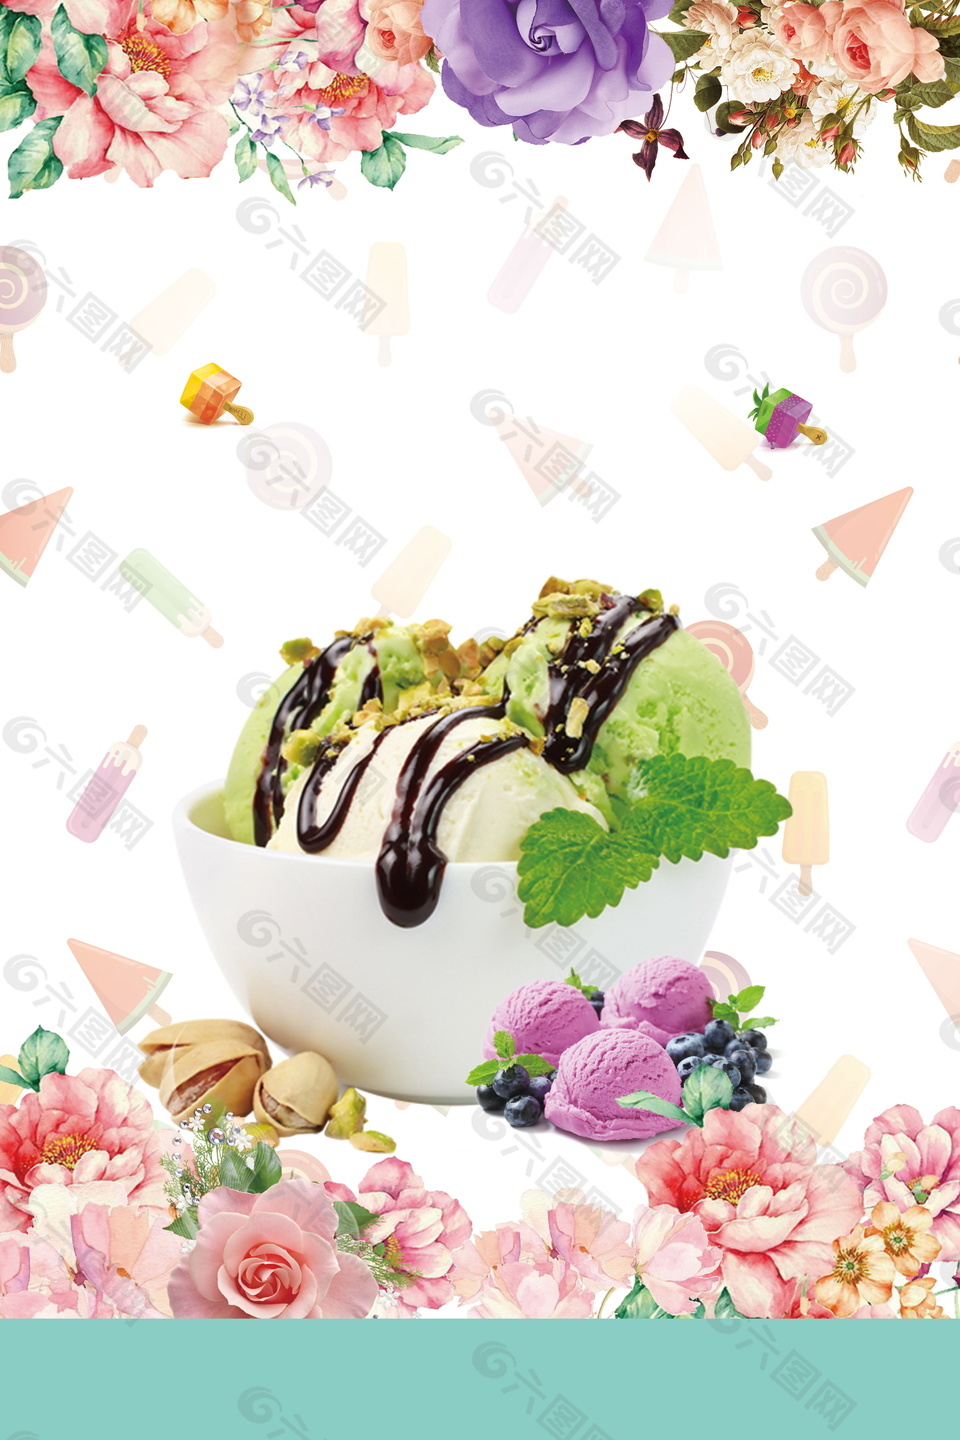 夏日花朵坚果冰淇淋背景素材